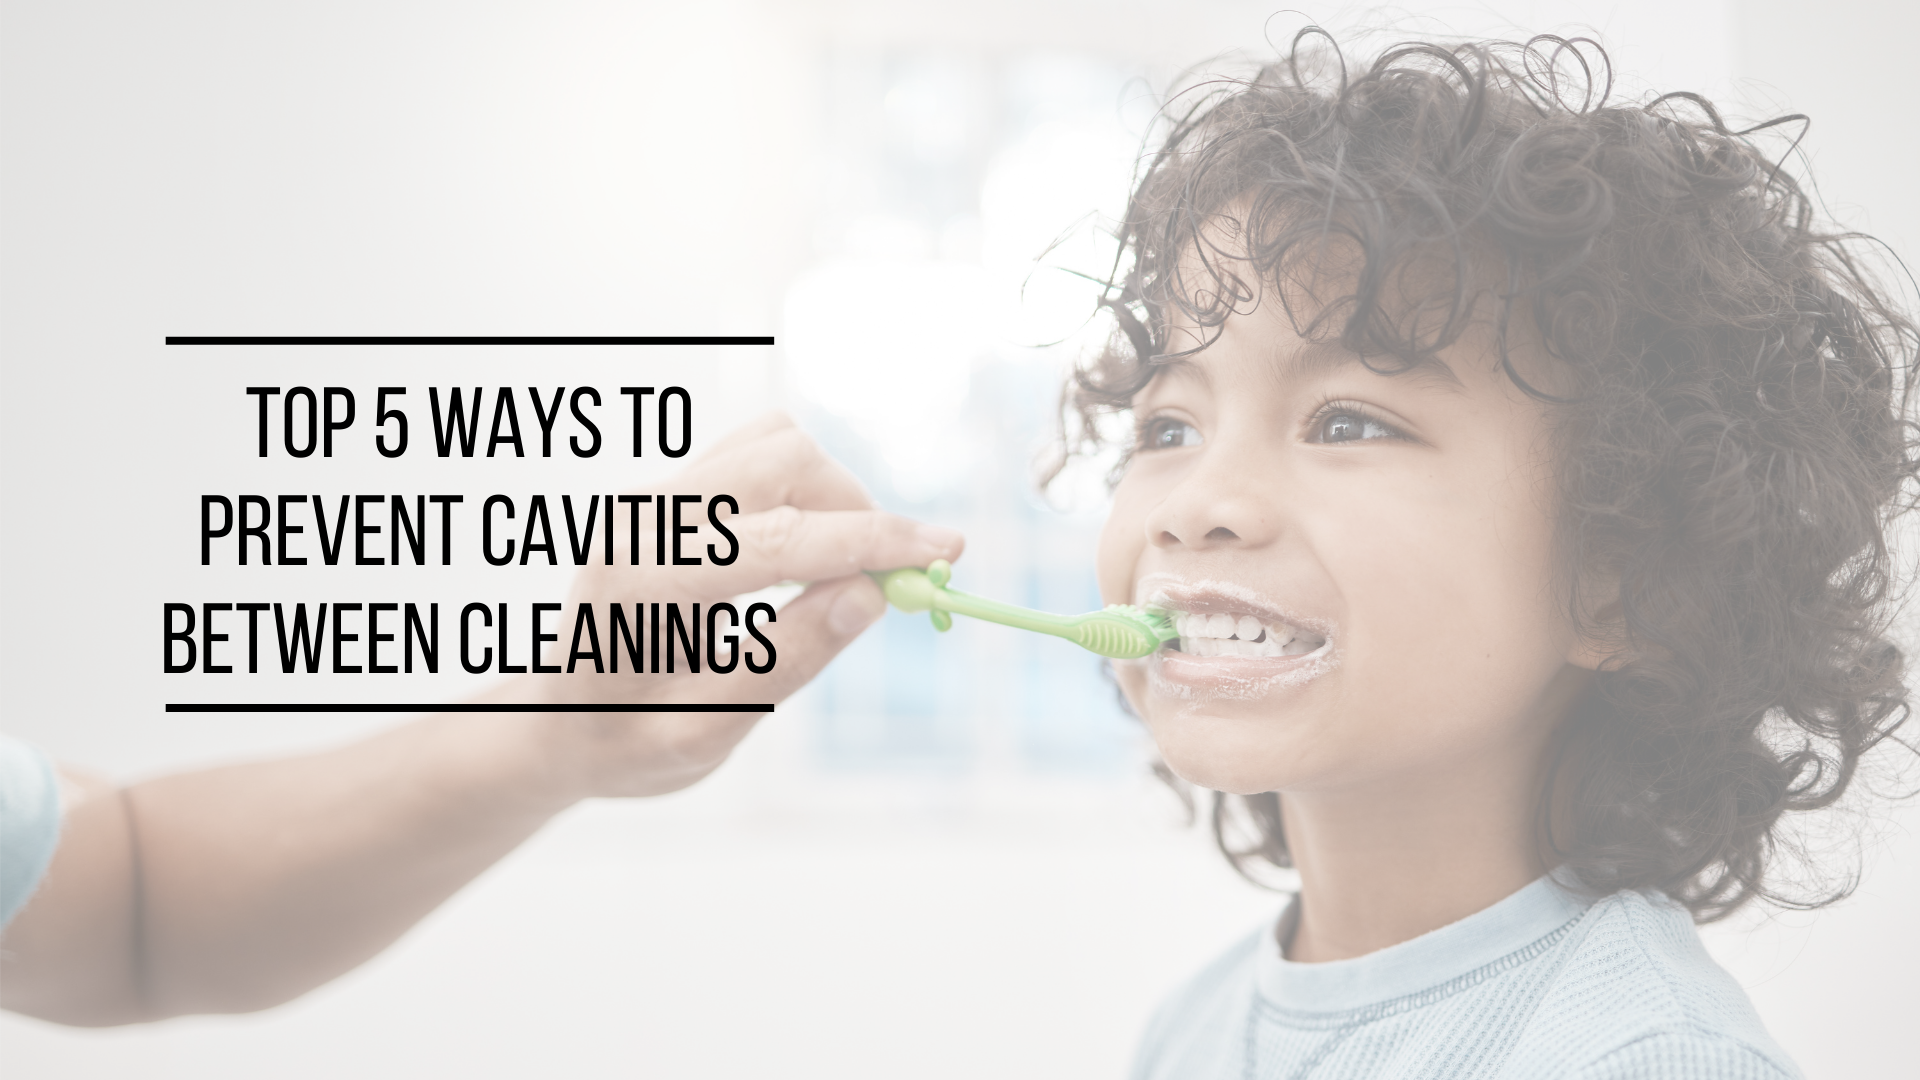 Top 5 Ways to Prevent Cavities Between Cleanings